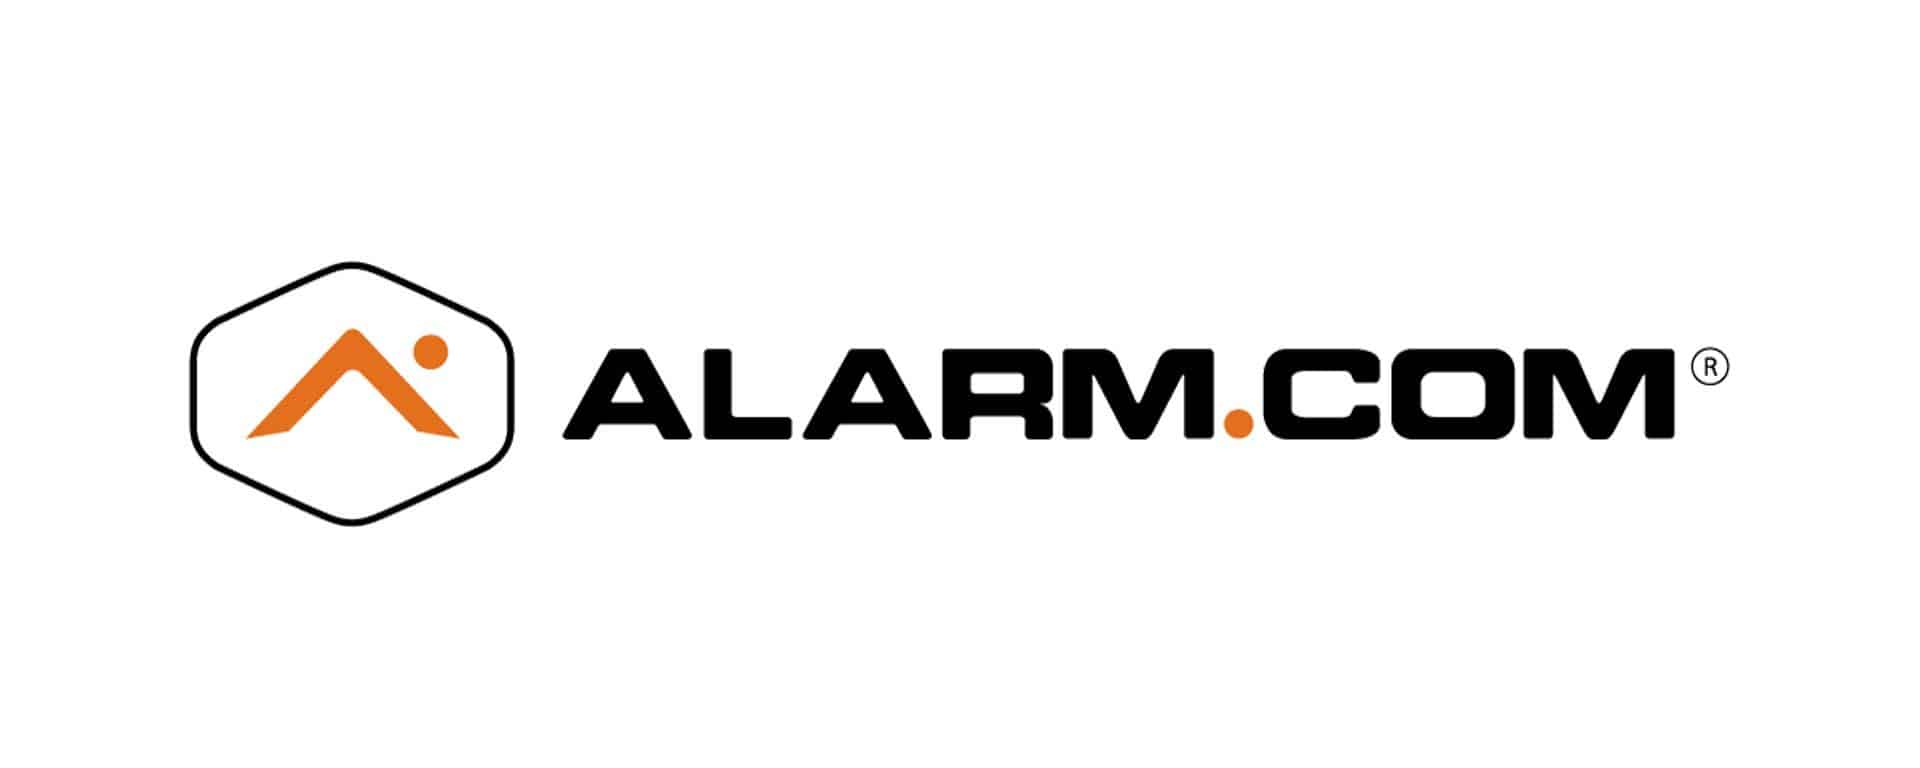 alarm.com_logo